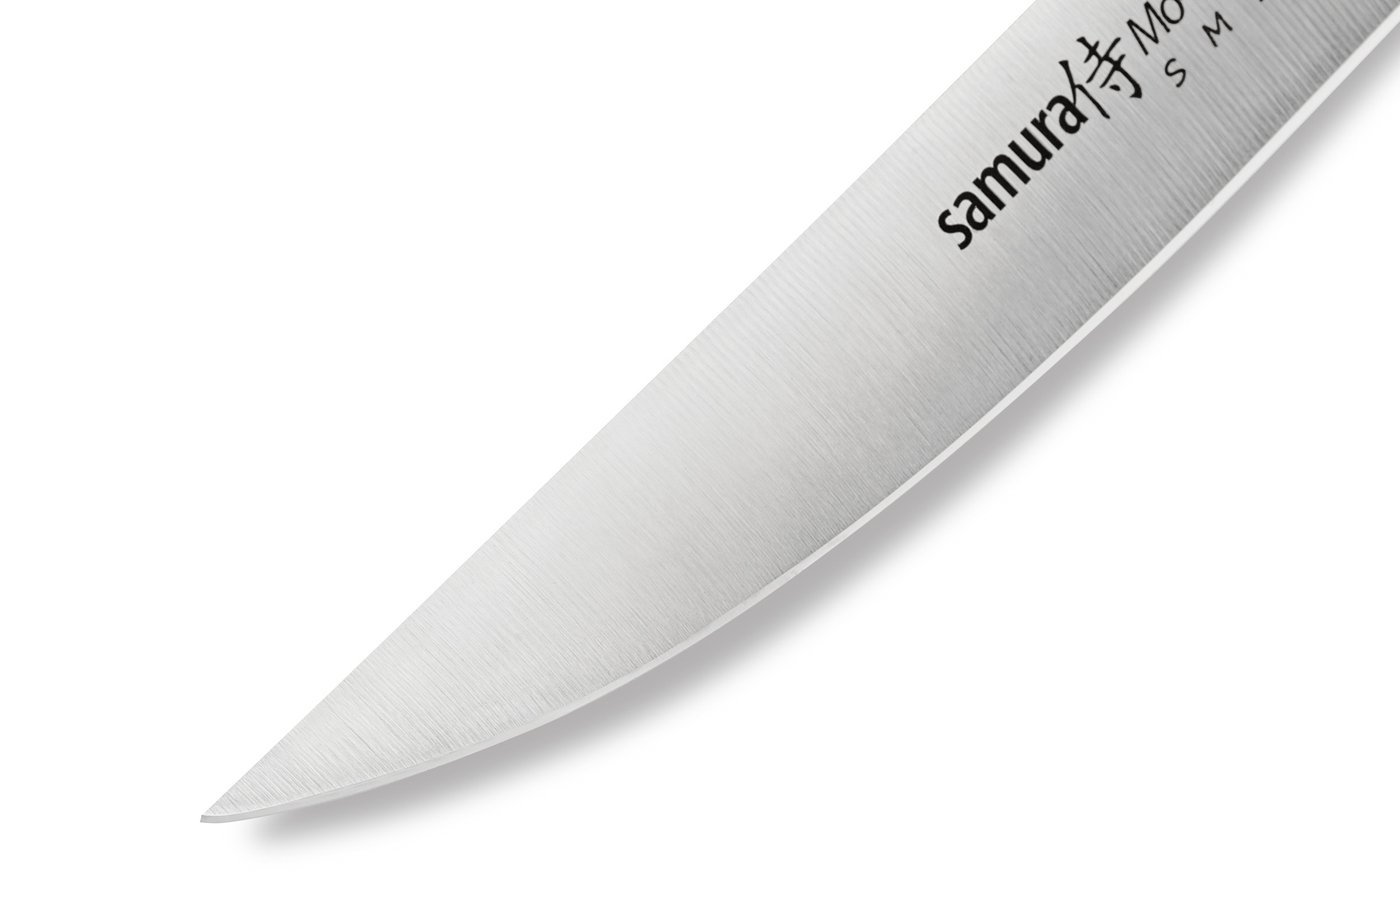 Нож кухонный "Samura Mo-V" для стейка - SM-0031, сталь AUS-8, рукоять G10, 120 мм от Ножиков